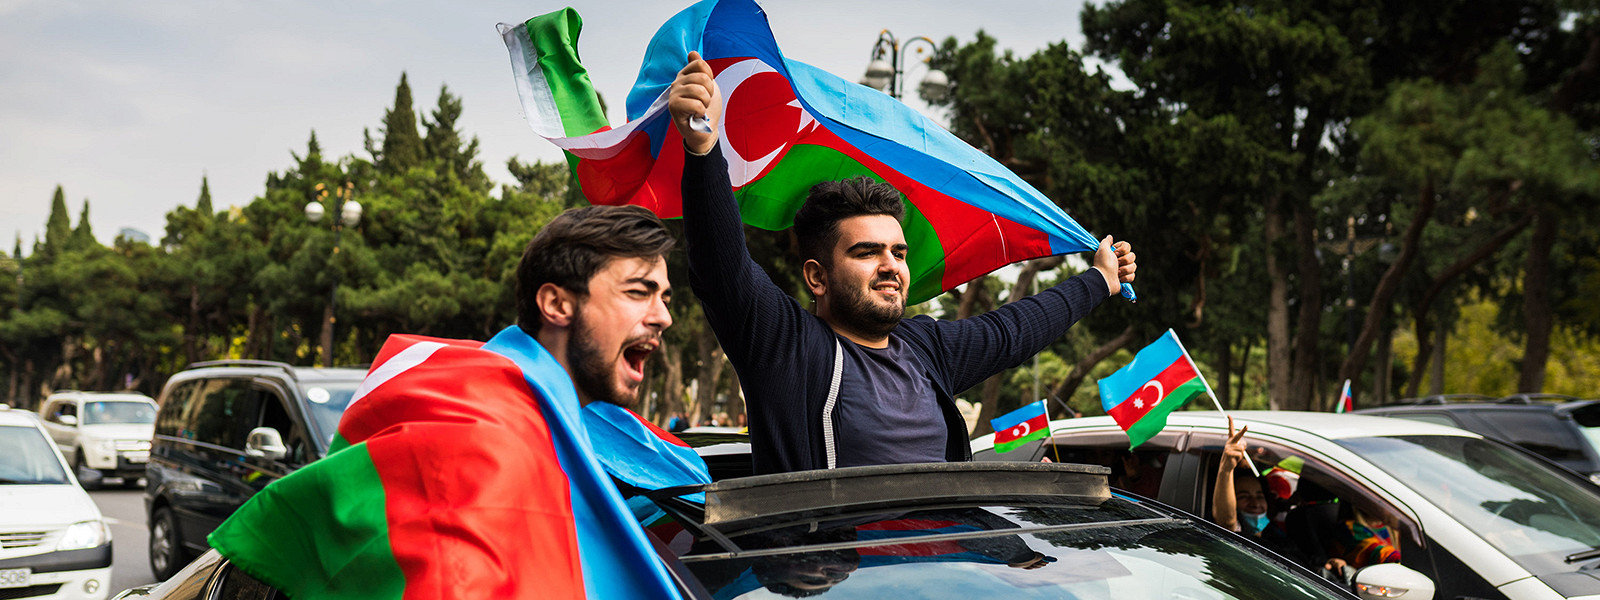 Журнал/Что думают о русских азербайджанцы? 4 неожиданных факта